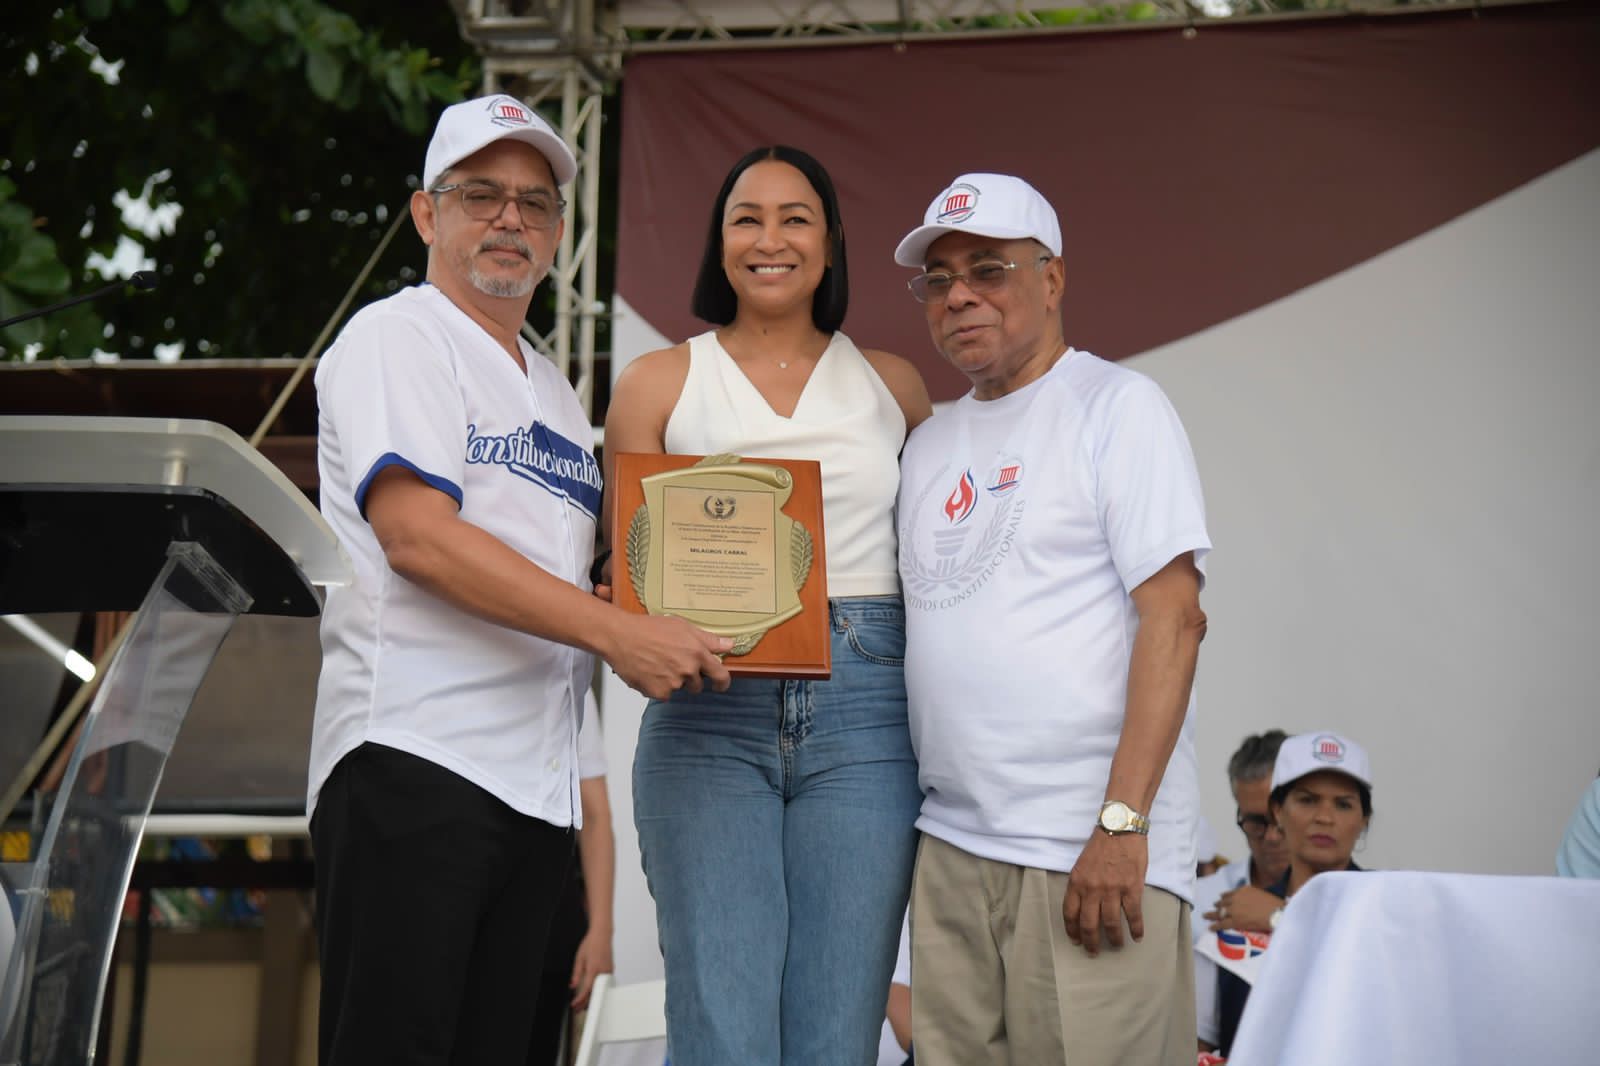 Juegos Deportivos Constitucionales dedicados a Milagros Cabral 2.jpeg